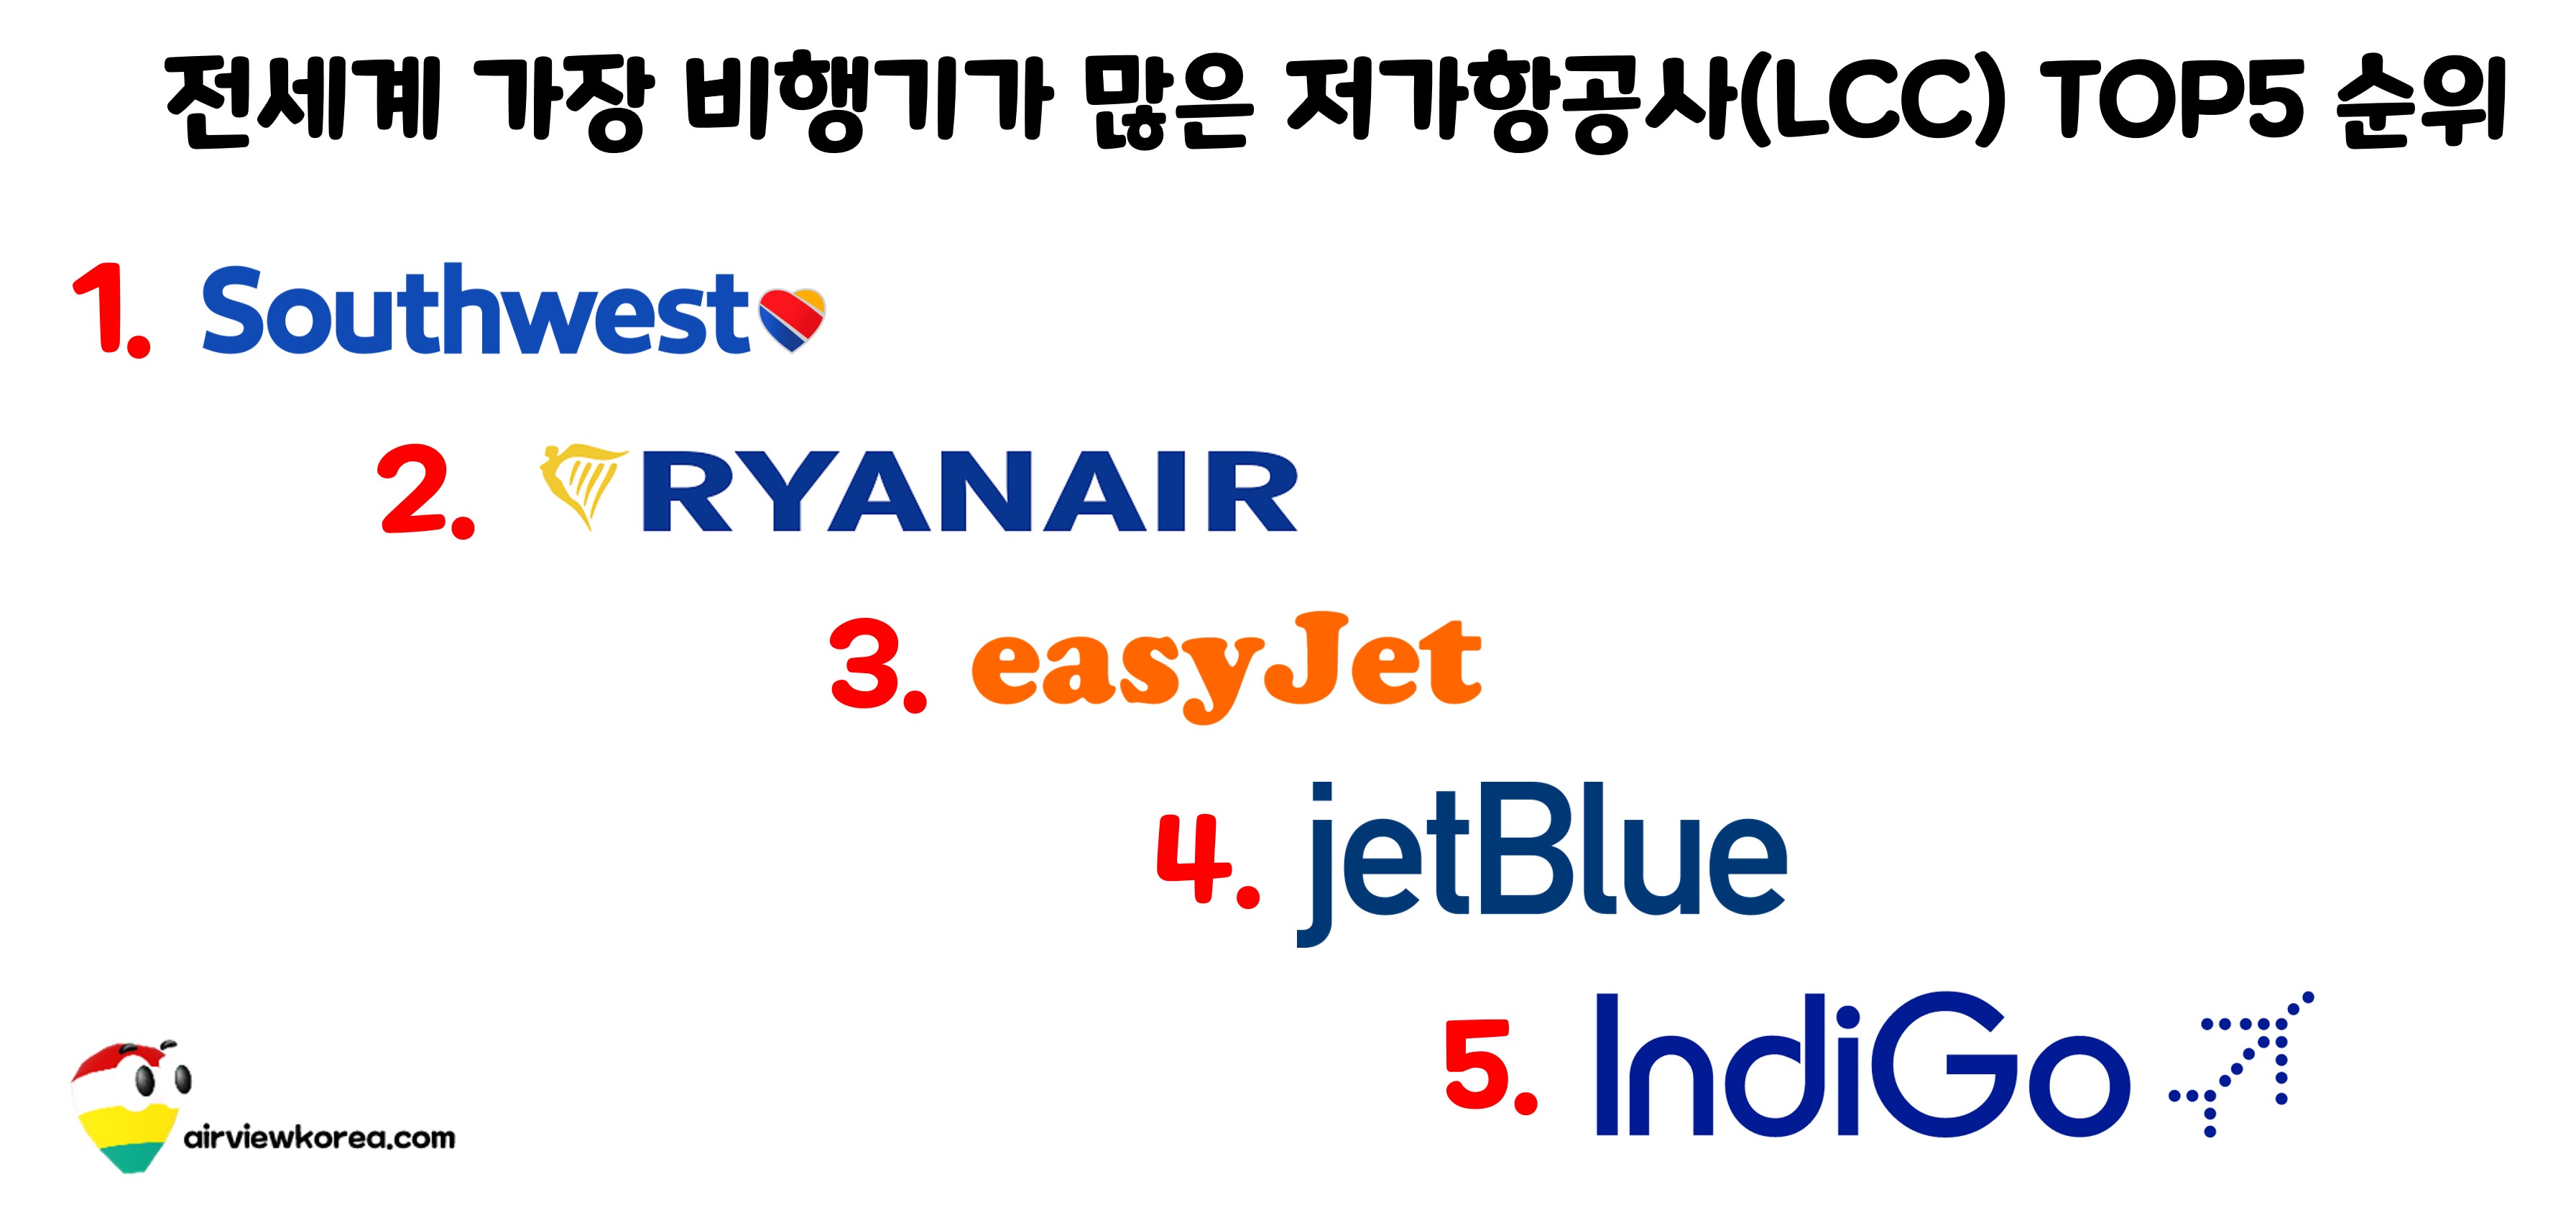 전세계 가장 비행기가 많은 저가항공사(LCC) 5개의 이름과 순위를 표시한 그림